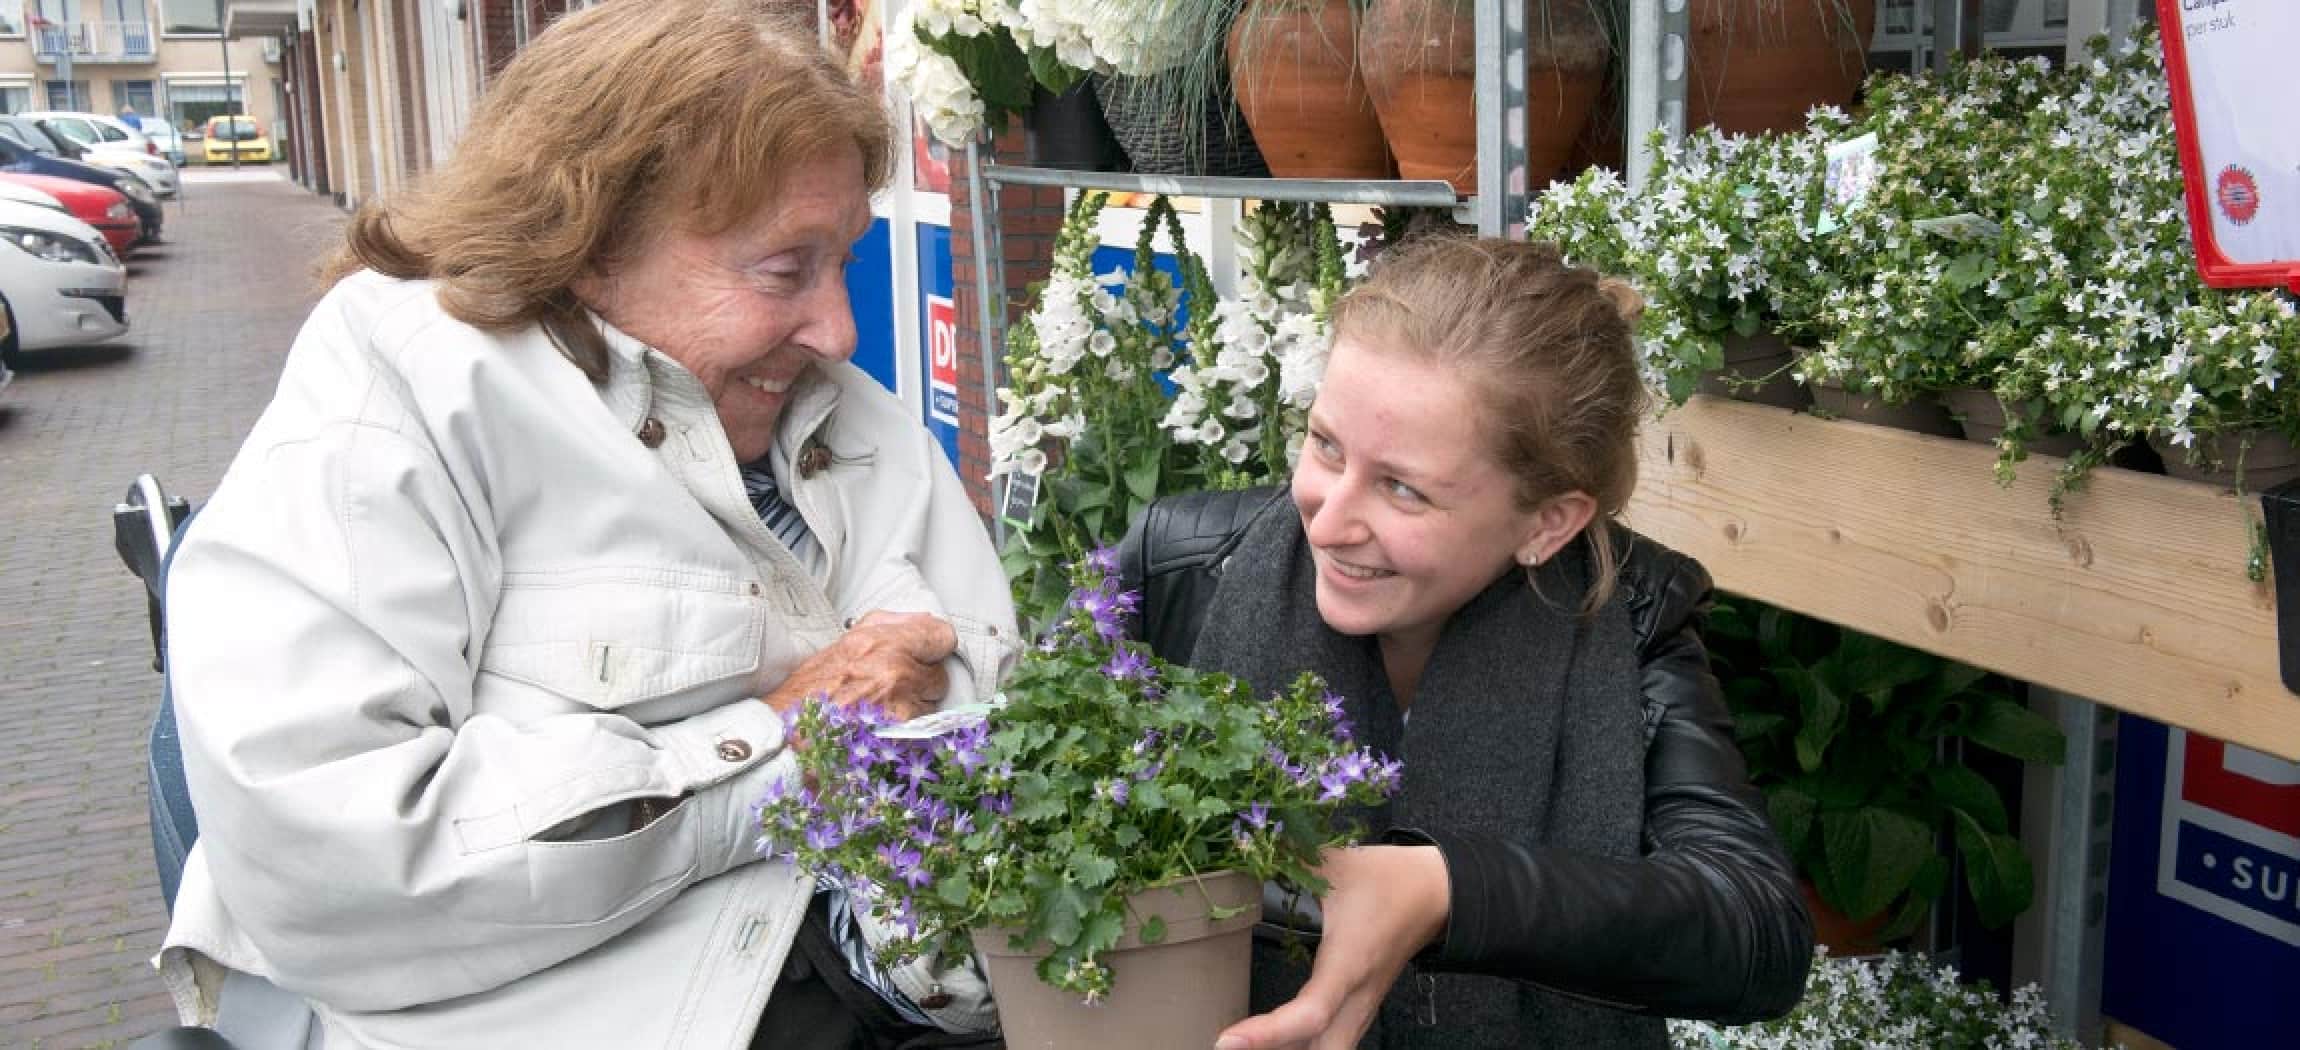 Stagiaire MBO laat bij winkels plantjes zien aan oudere vrouw in rolstoel